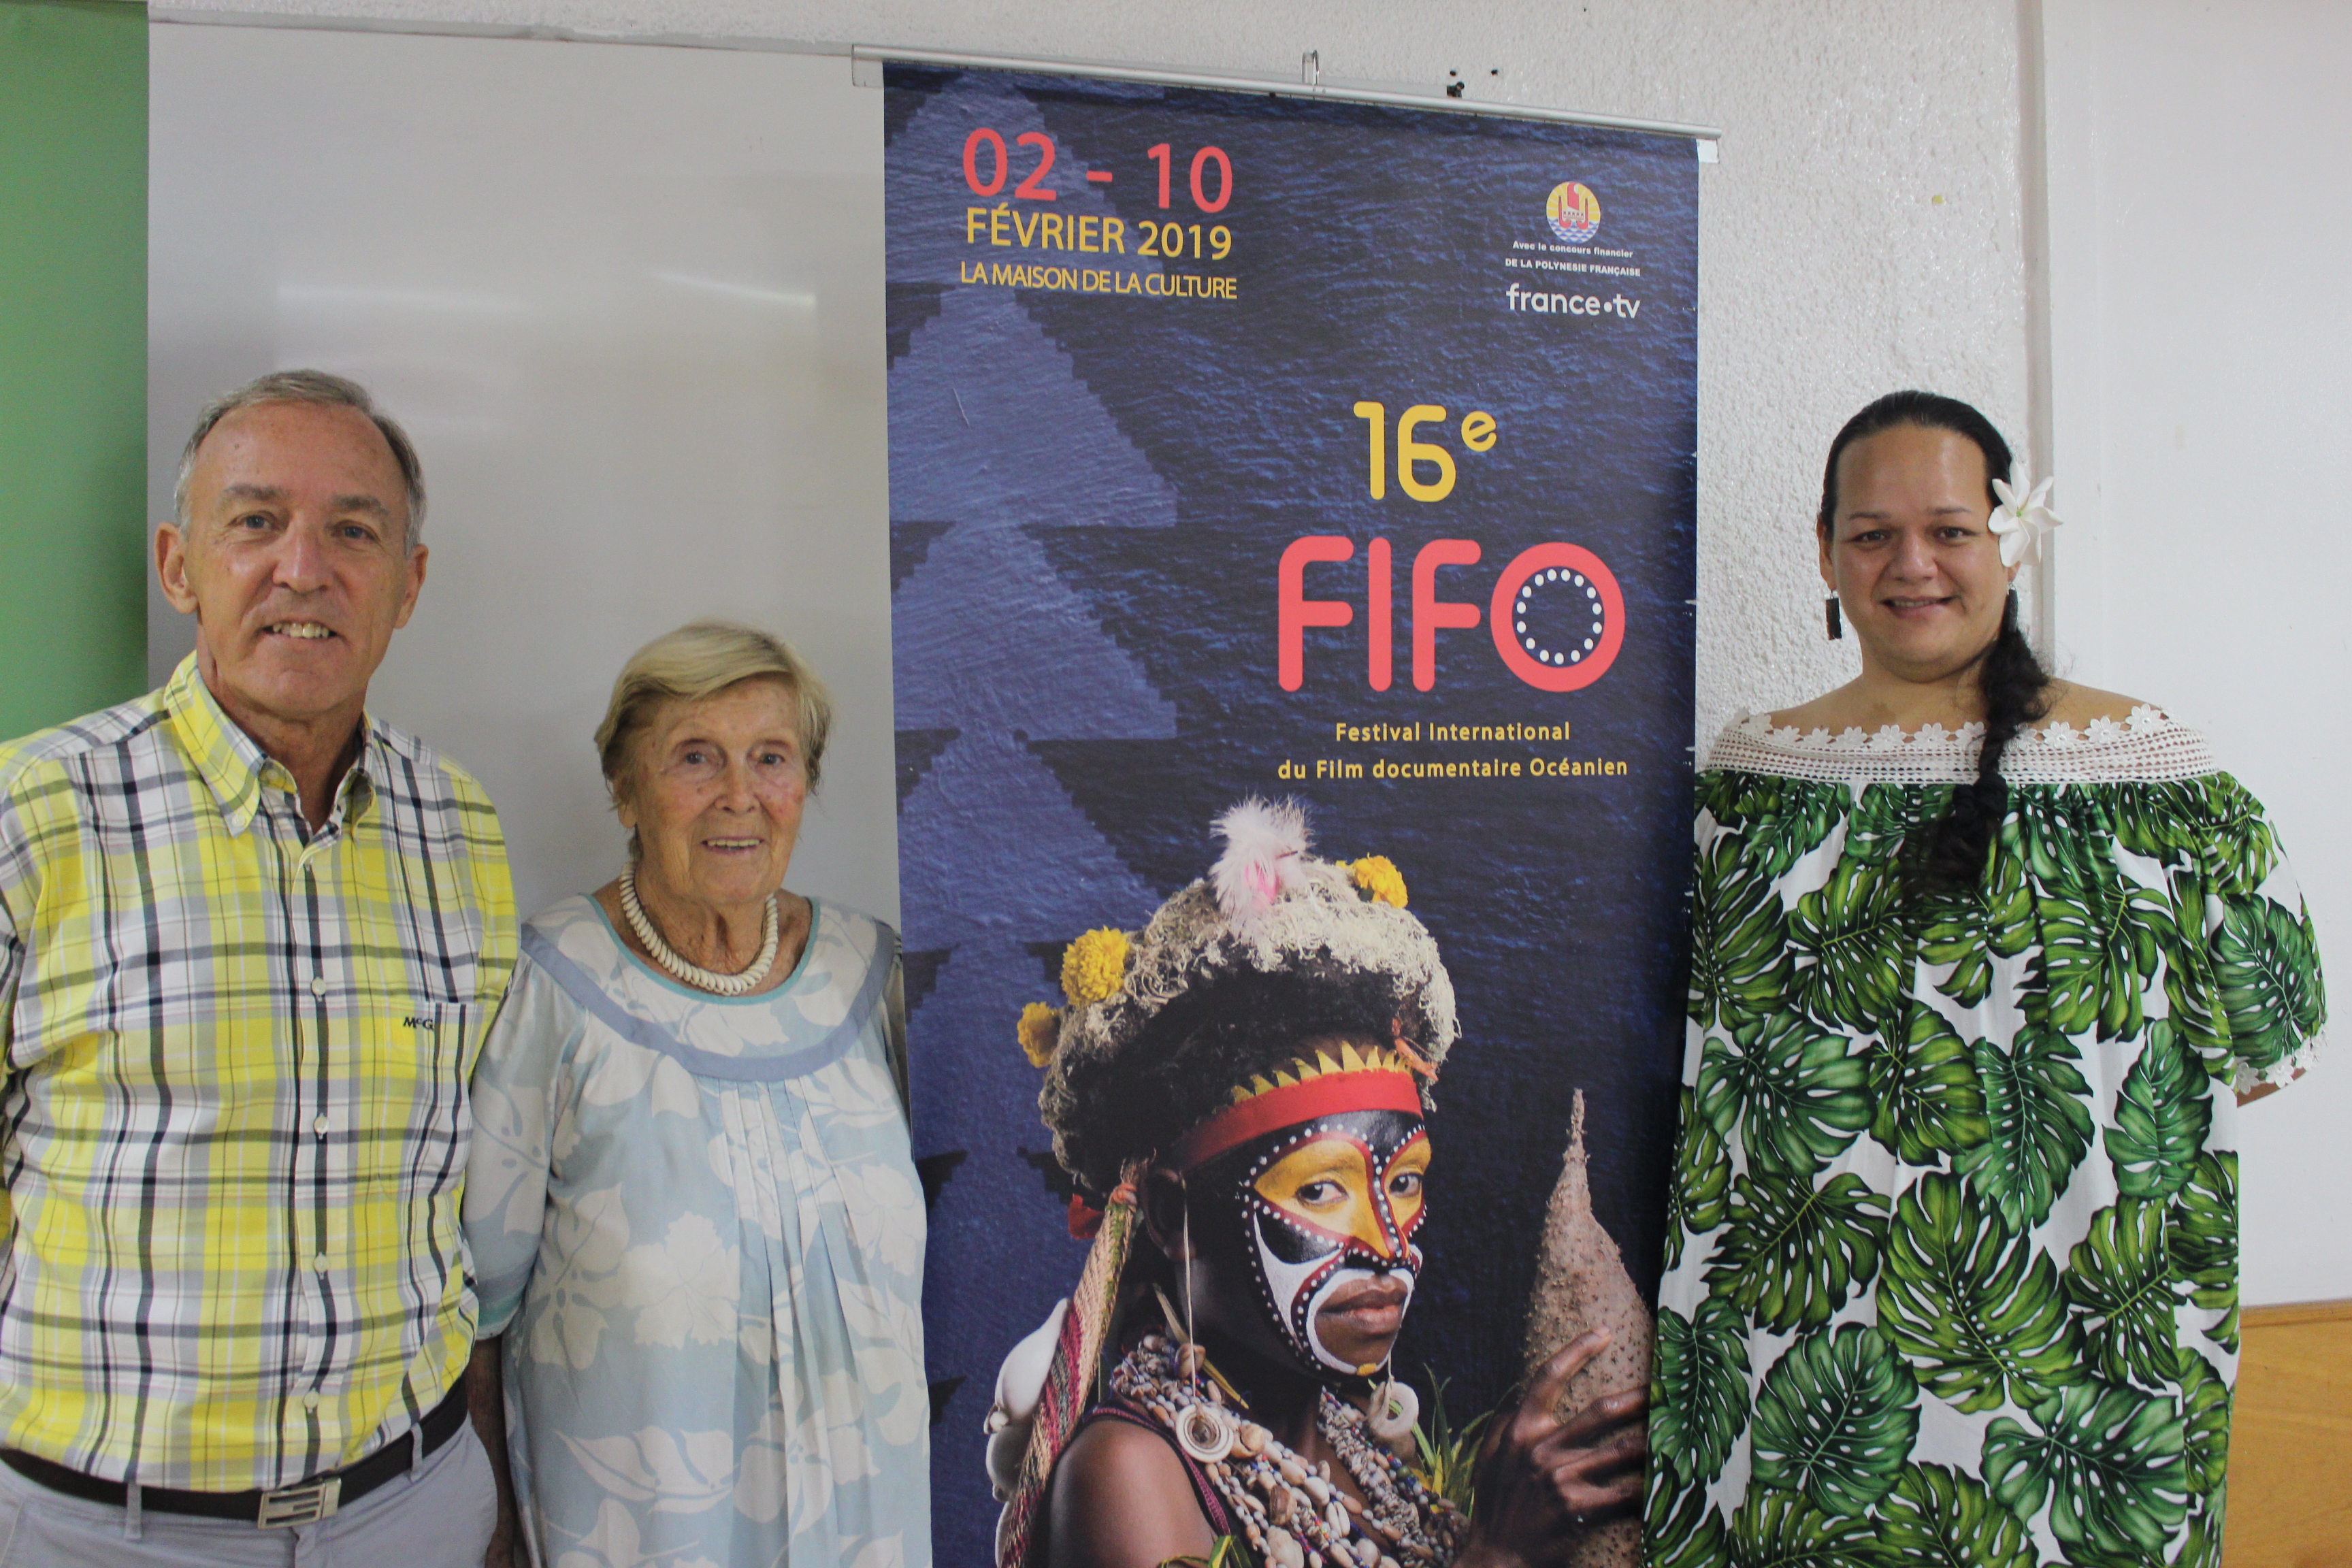 Pierre Ollivier, vice-président et 1er délégué général du Fifo, Michèle de Chazeau, membre du comité de sélection, Mareva Leu, déléguée générale de l’association du festival international du film documentaire océanien (Afifo) (de gauche à droite).